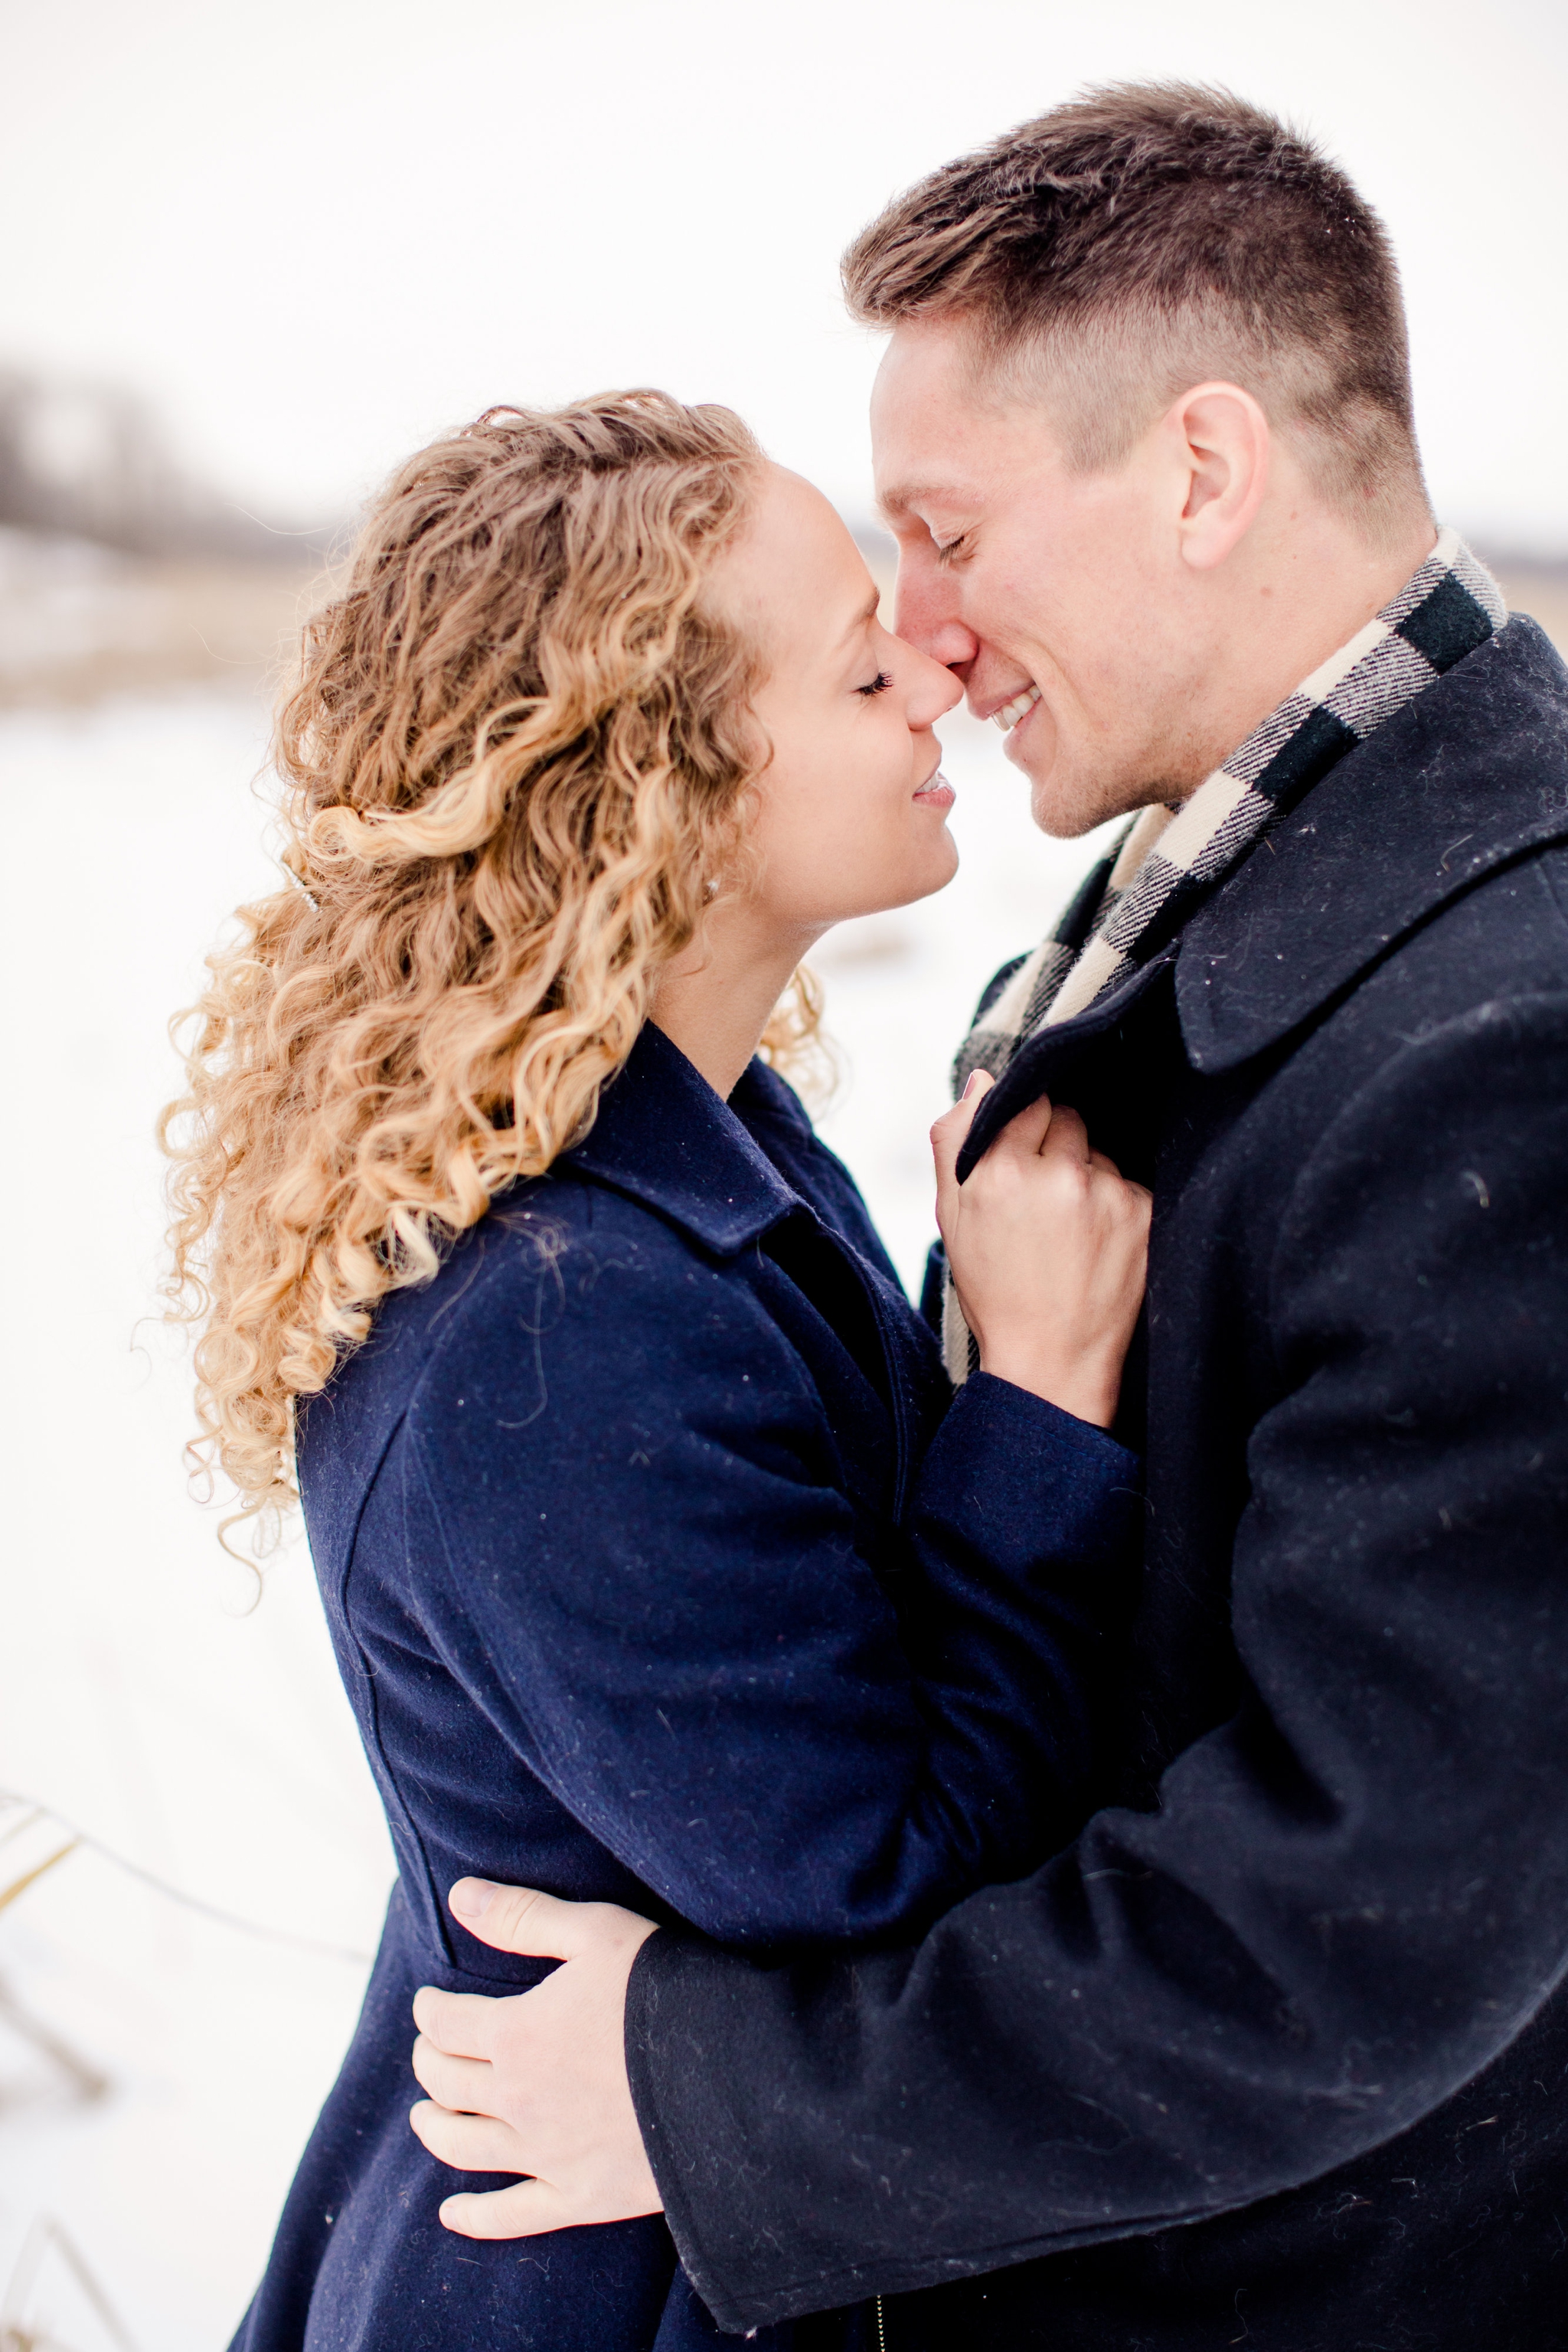 Detroit Lakes Winter Engagement Photographers, Wedding photographers